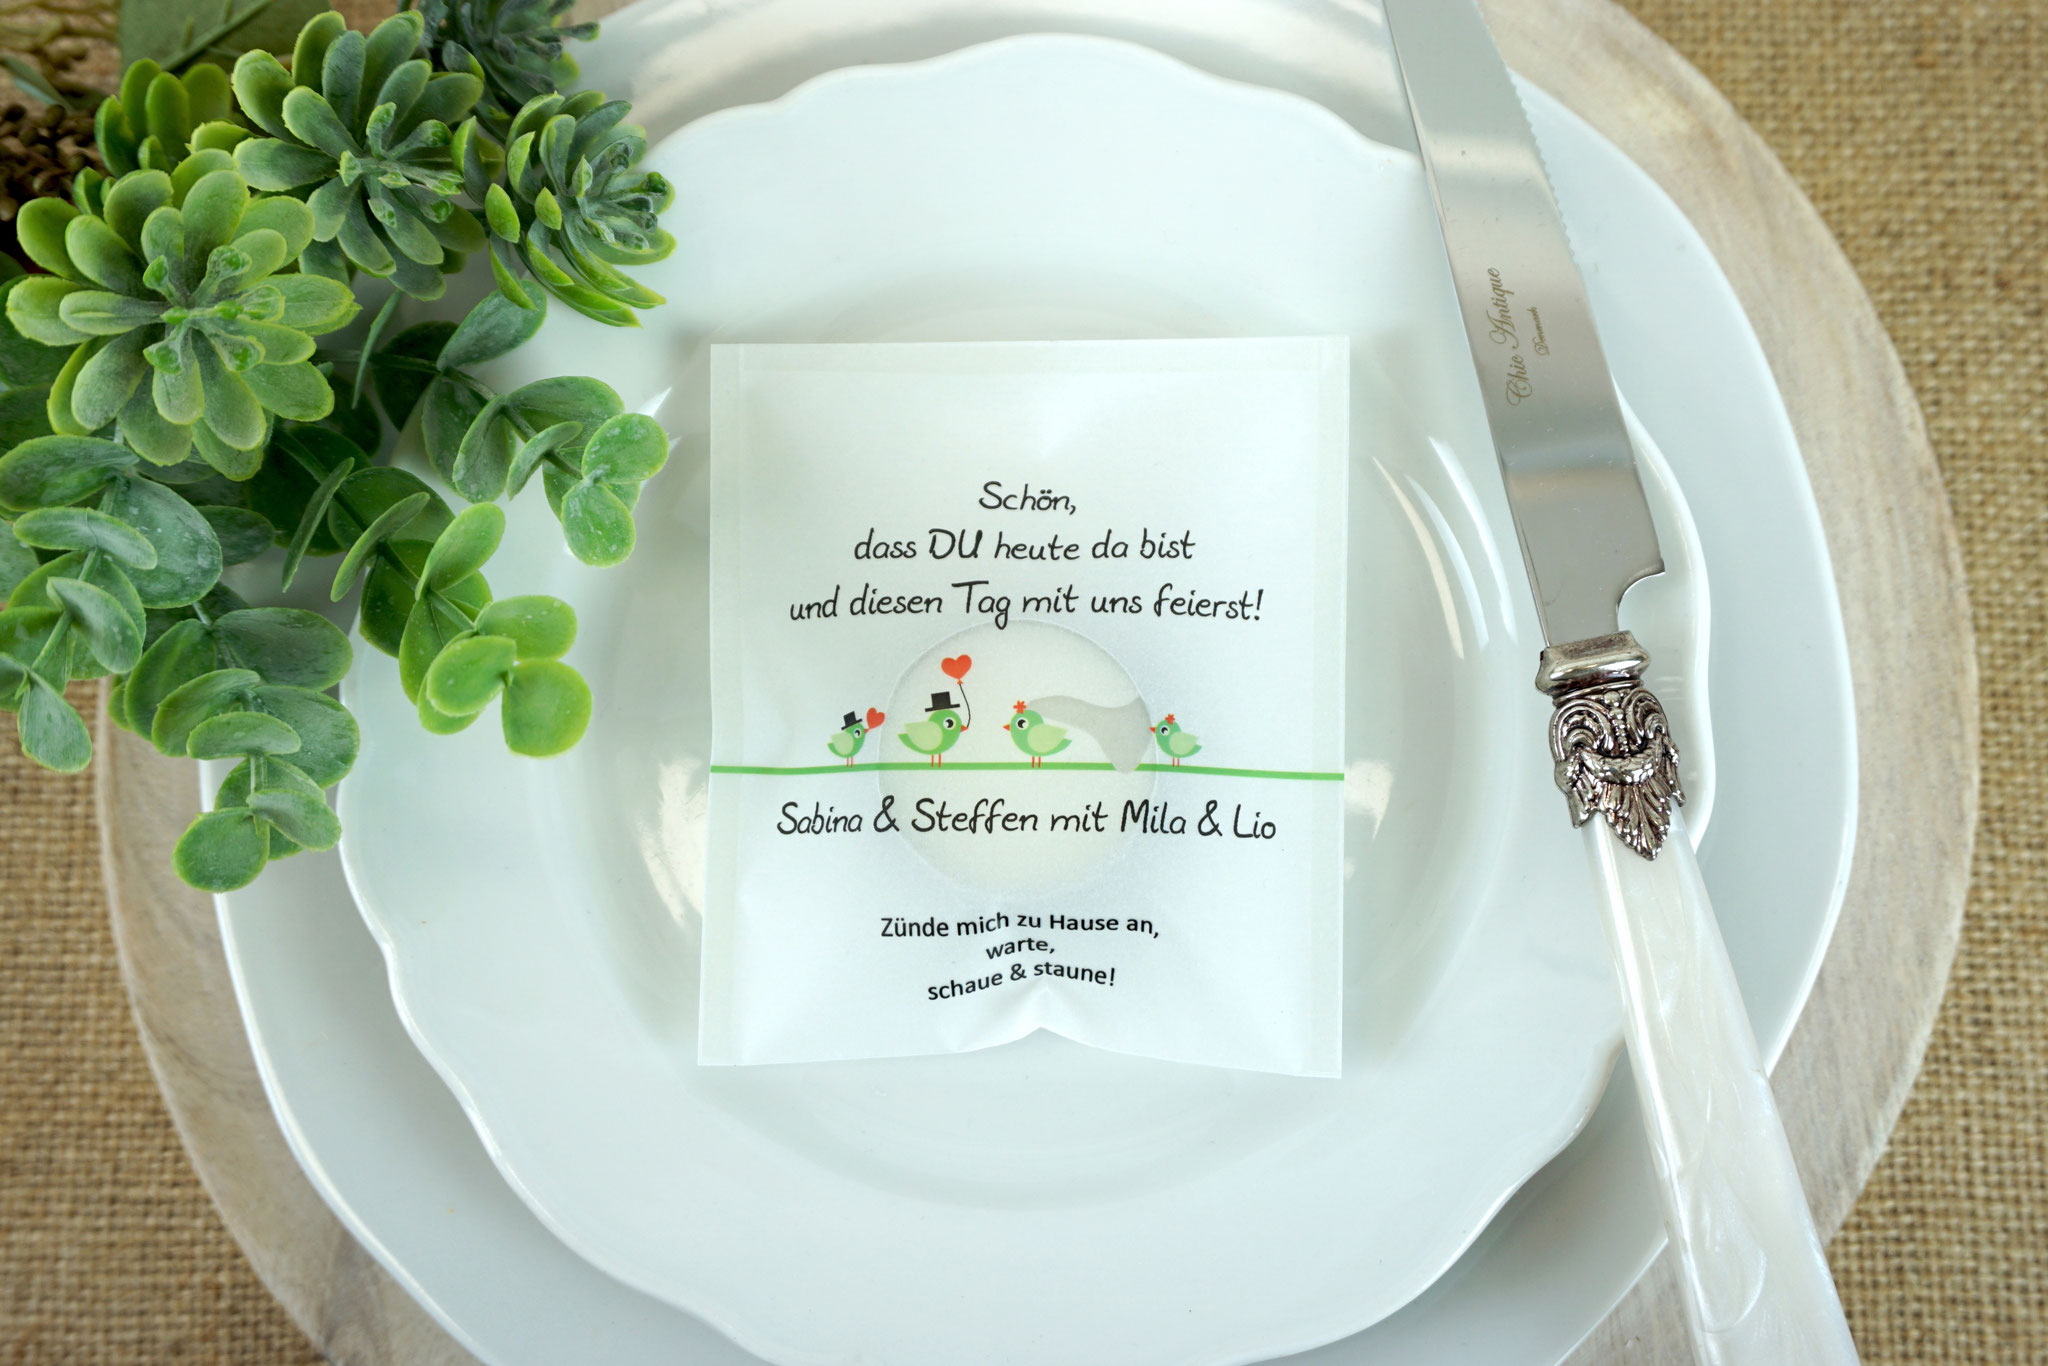 Licht-Botschaft Design "Hochzeitsvögel" - Farbe Apfelgrün - Eine Familie heiratet